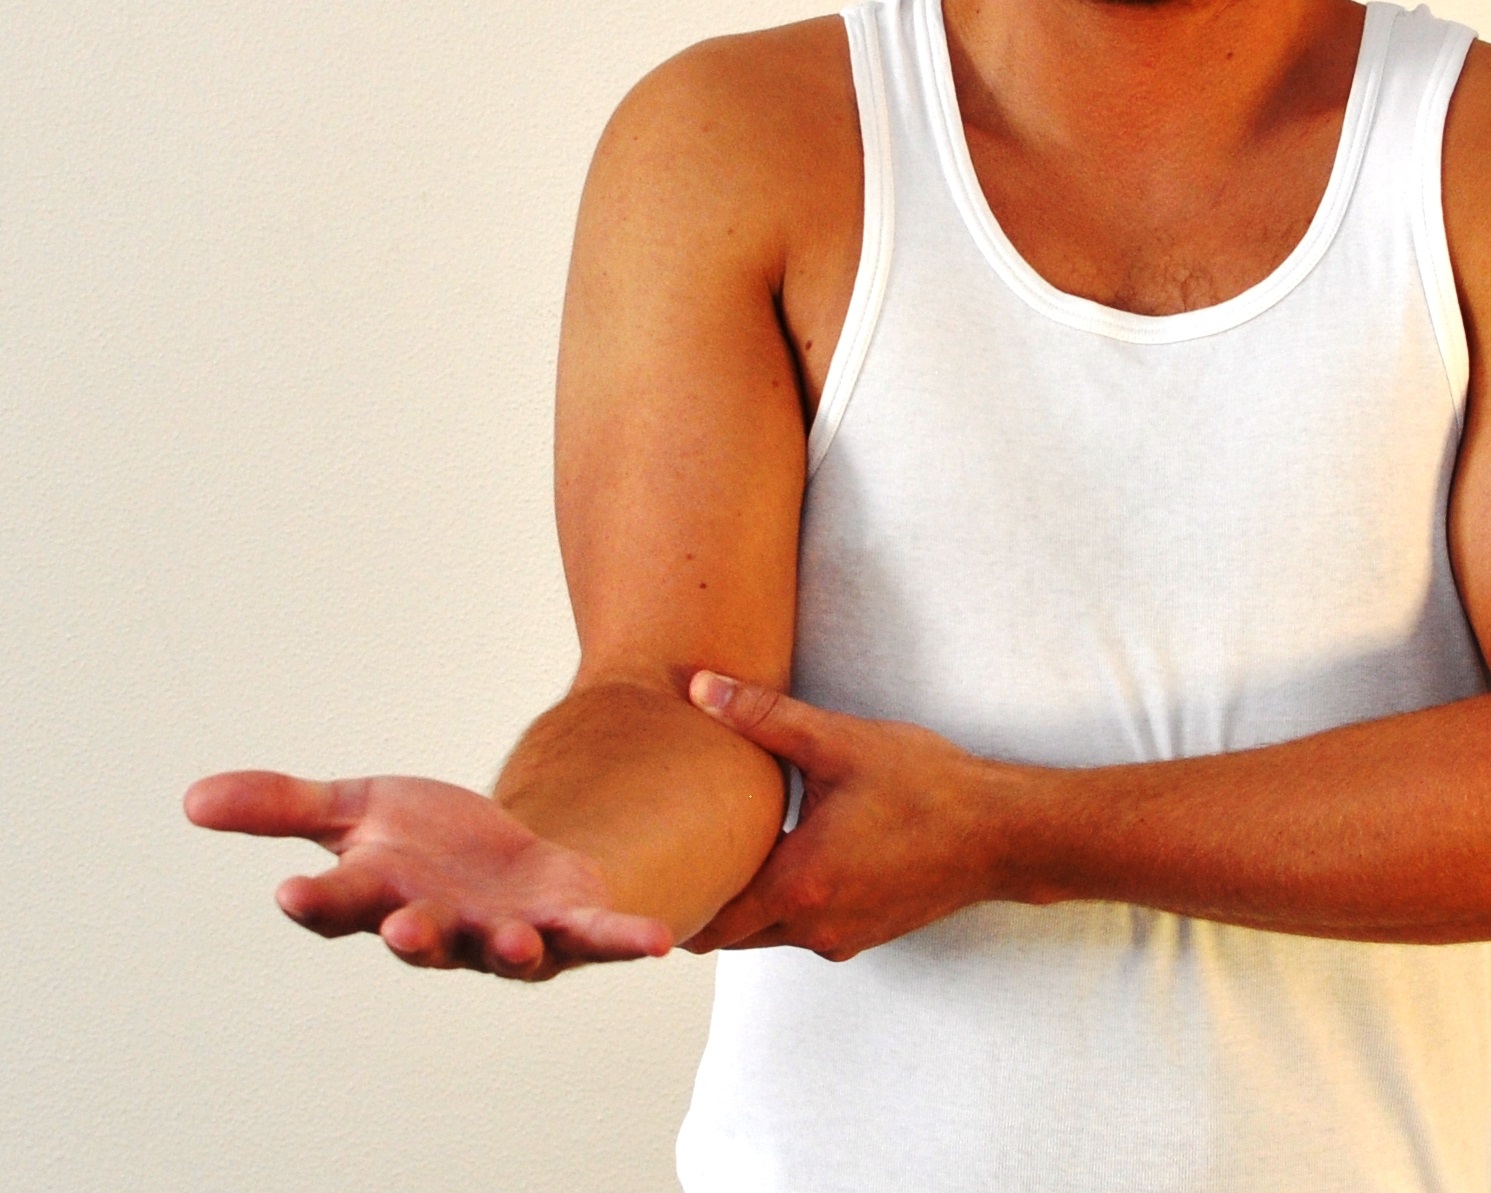 Arm med 90 grader bøjet albue - håndfladen vender opad og fingrene er strakte.